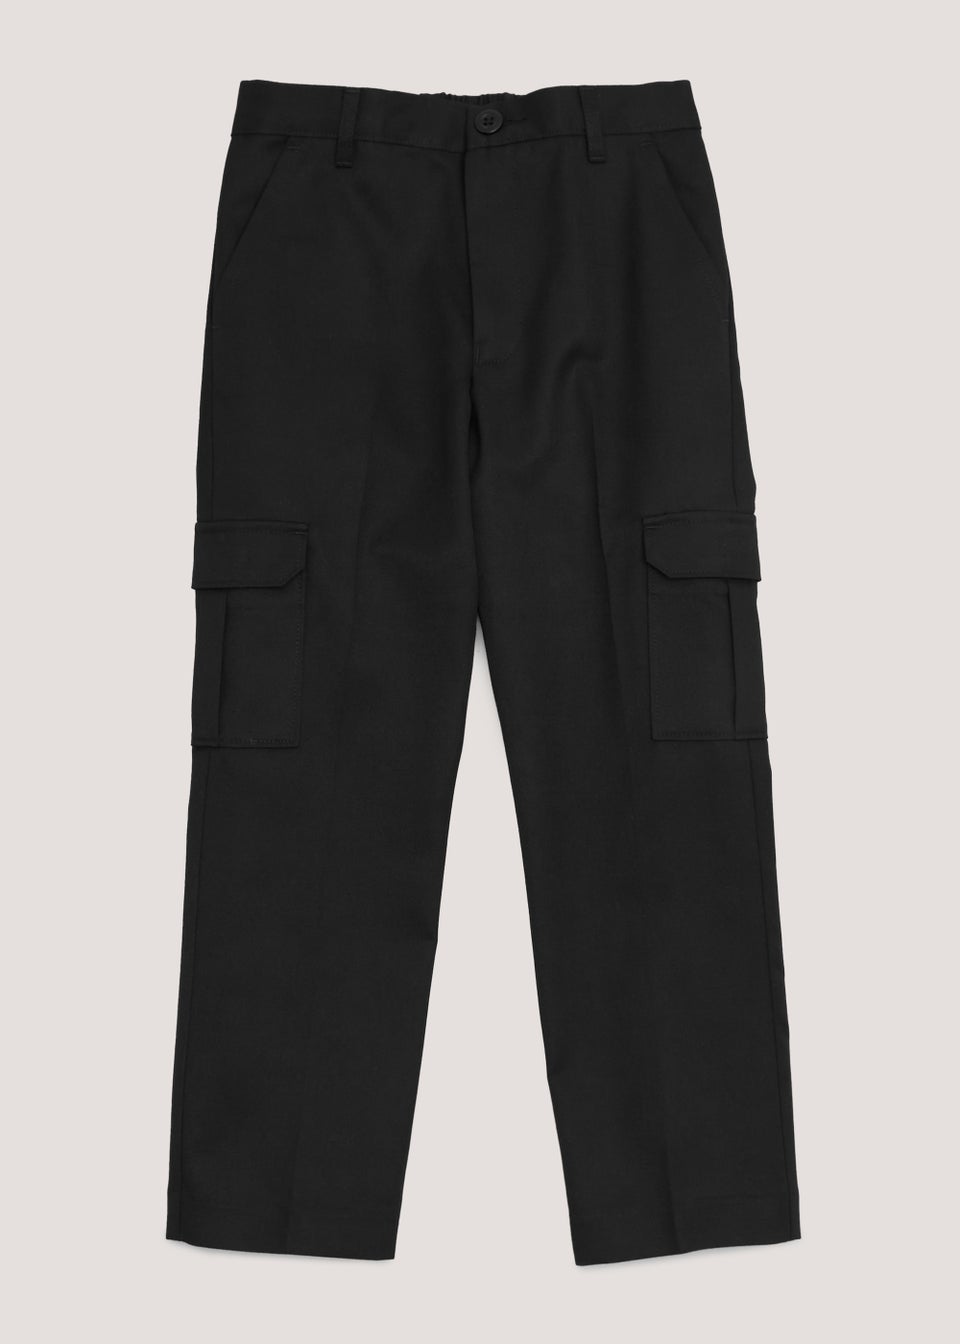 Boys Black Cargo School Trousers (3-13yrs)